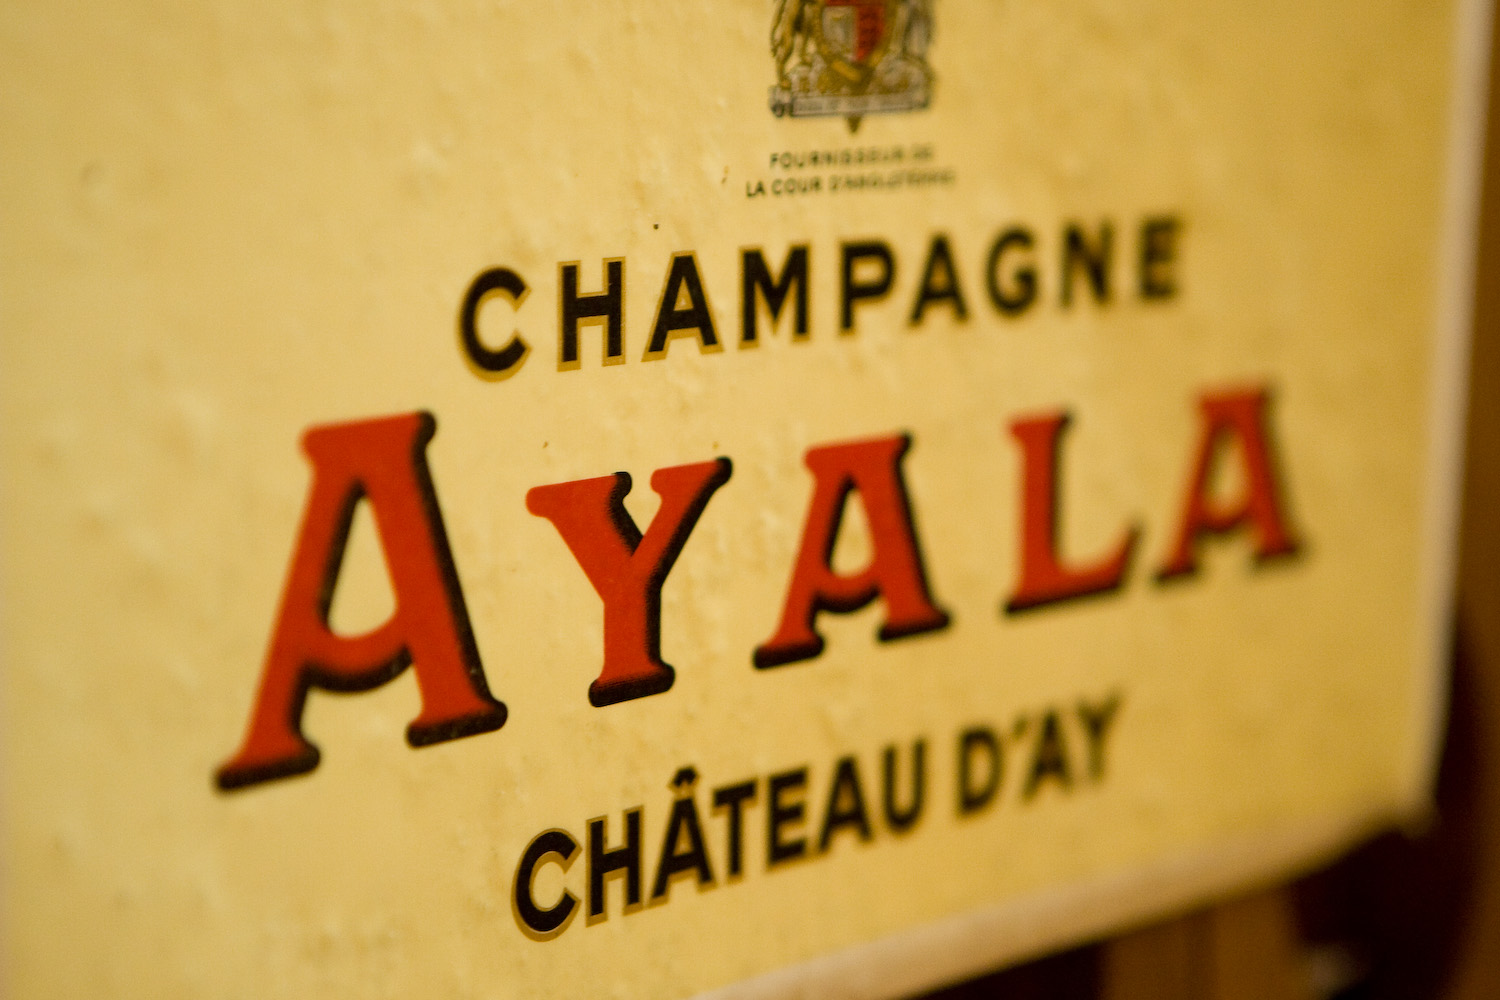 Champagne Ayala